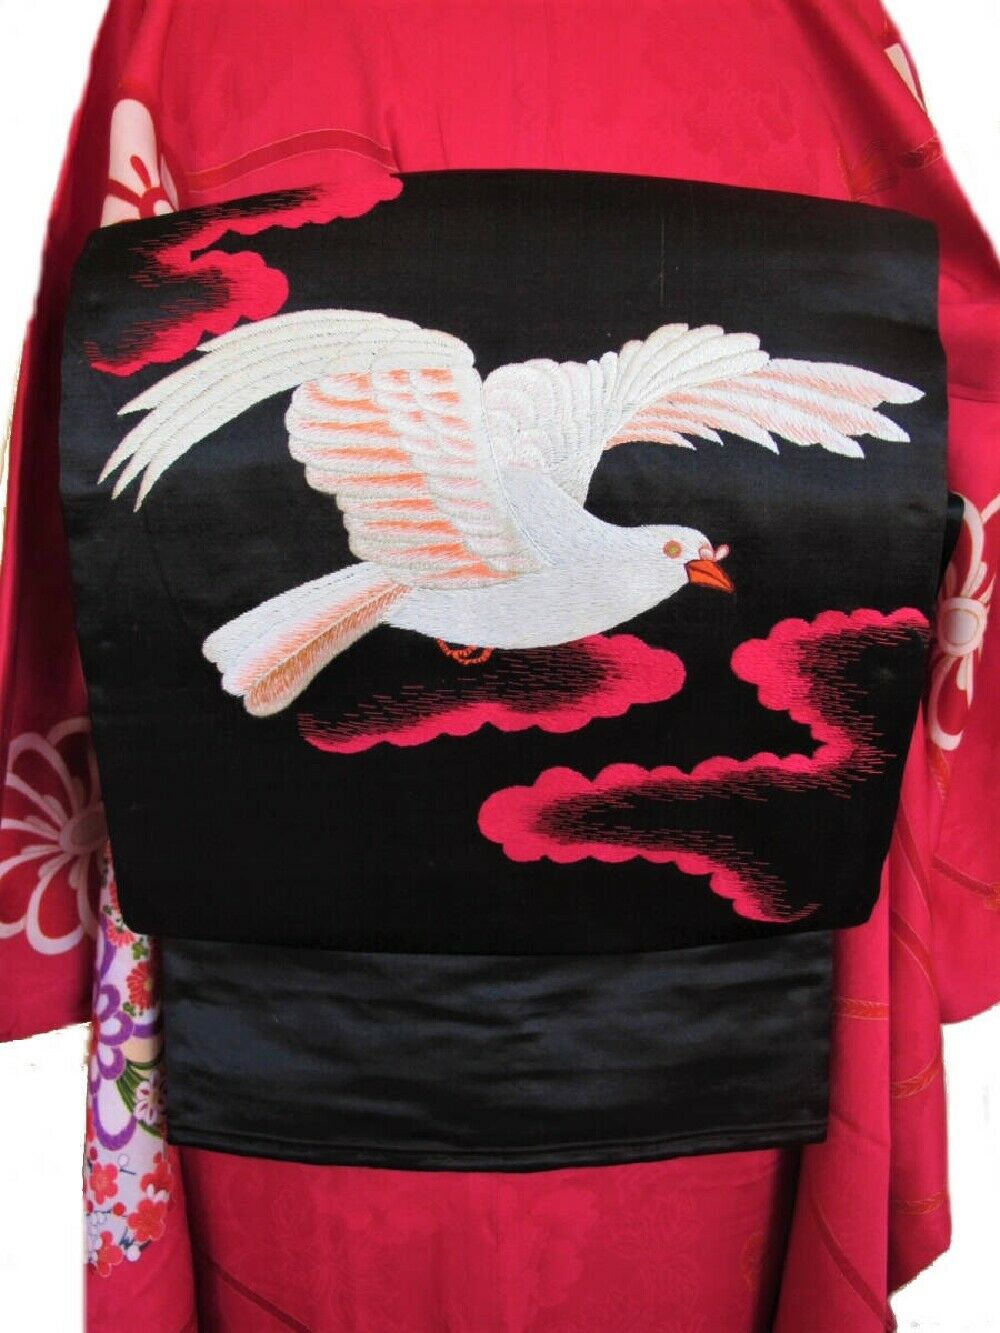 Nagoya Obi Sash Belt For Kimono White Pigeon Design Black G3854